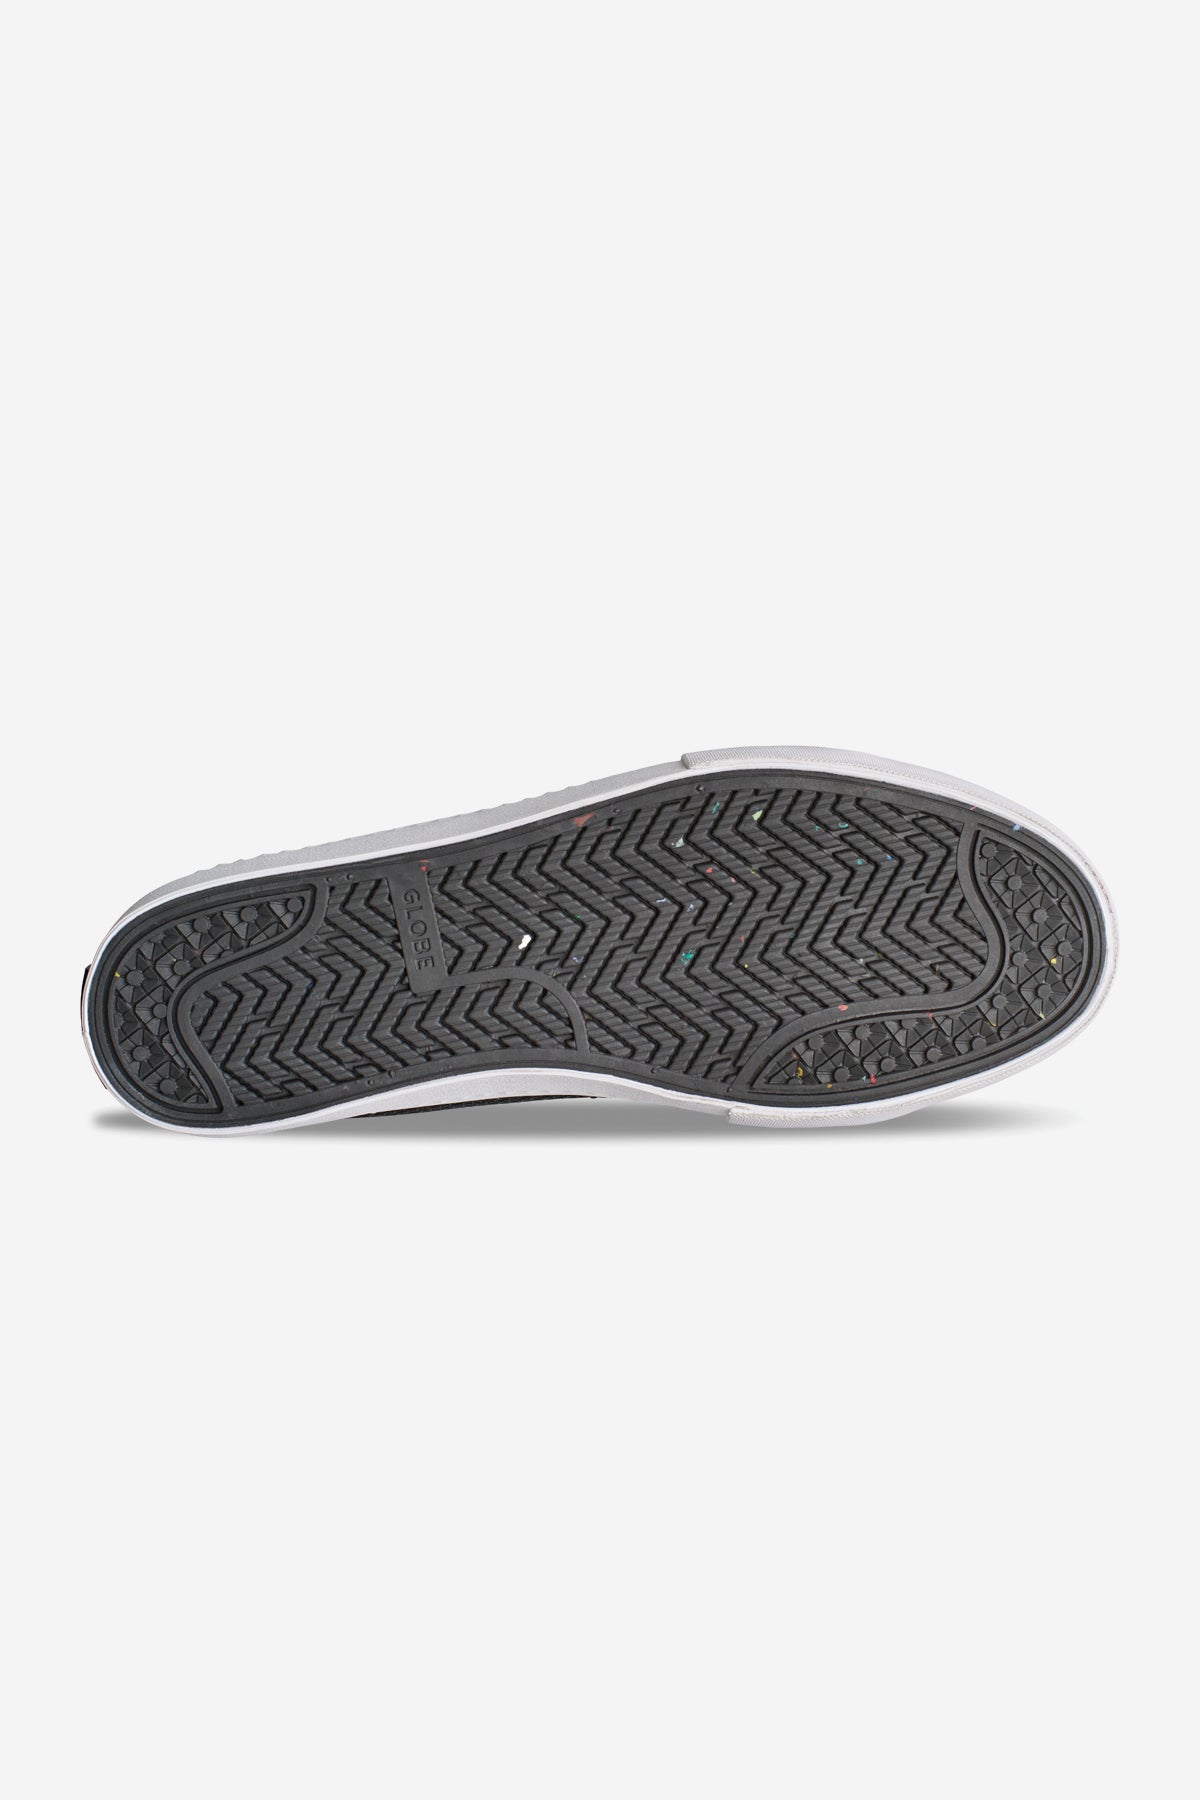 Maglia LA Black/White skateboard scarpe